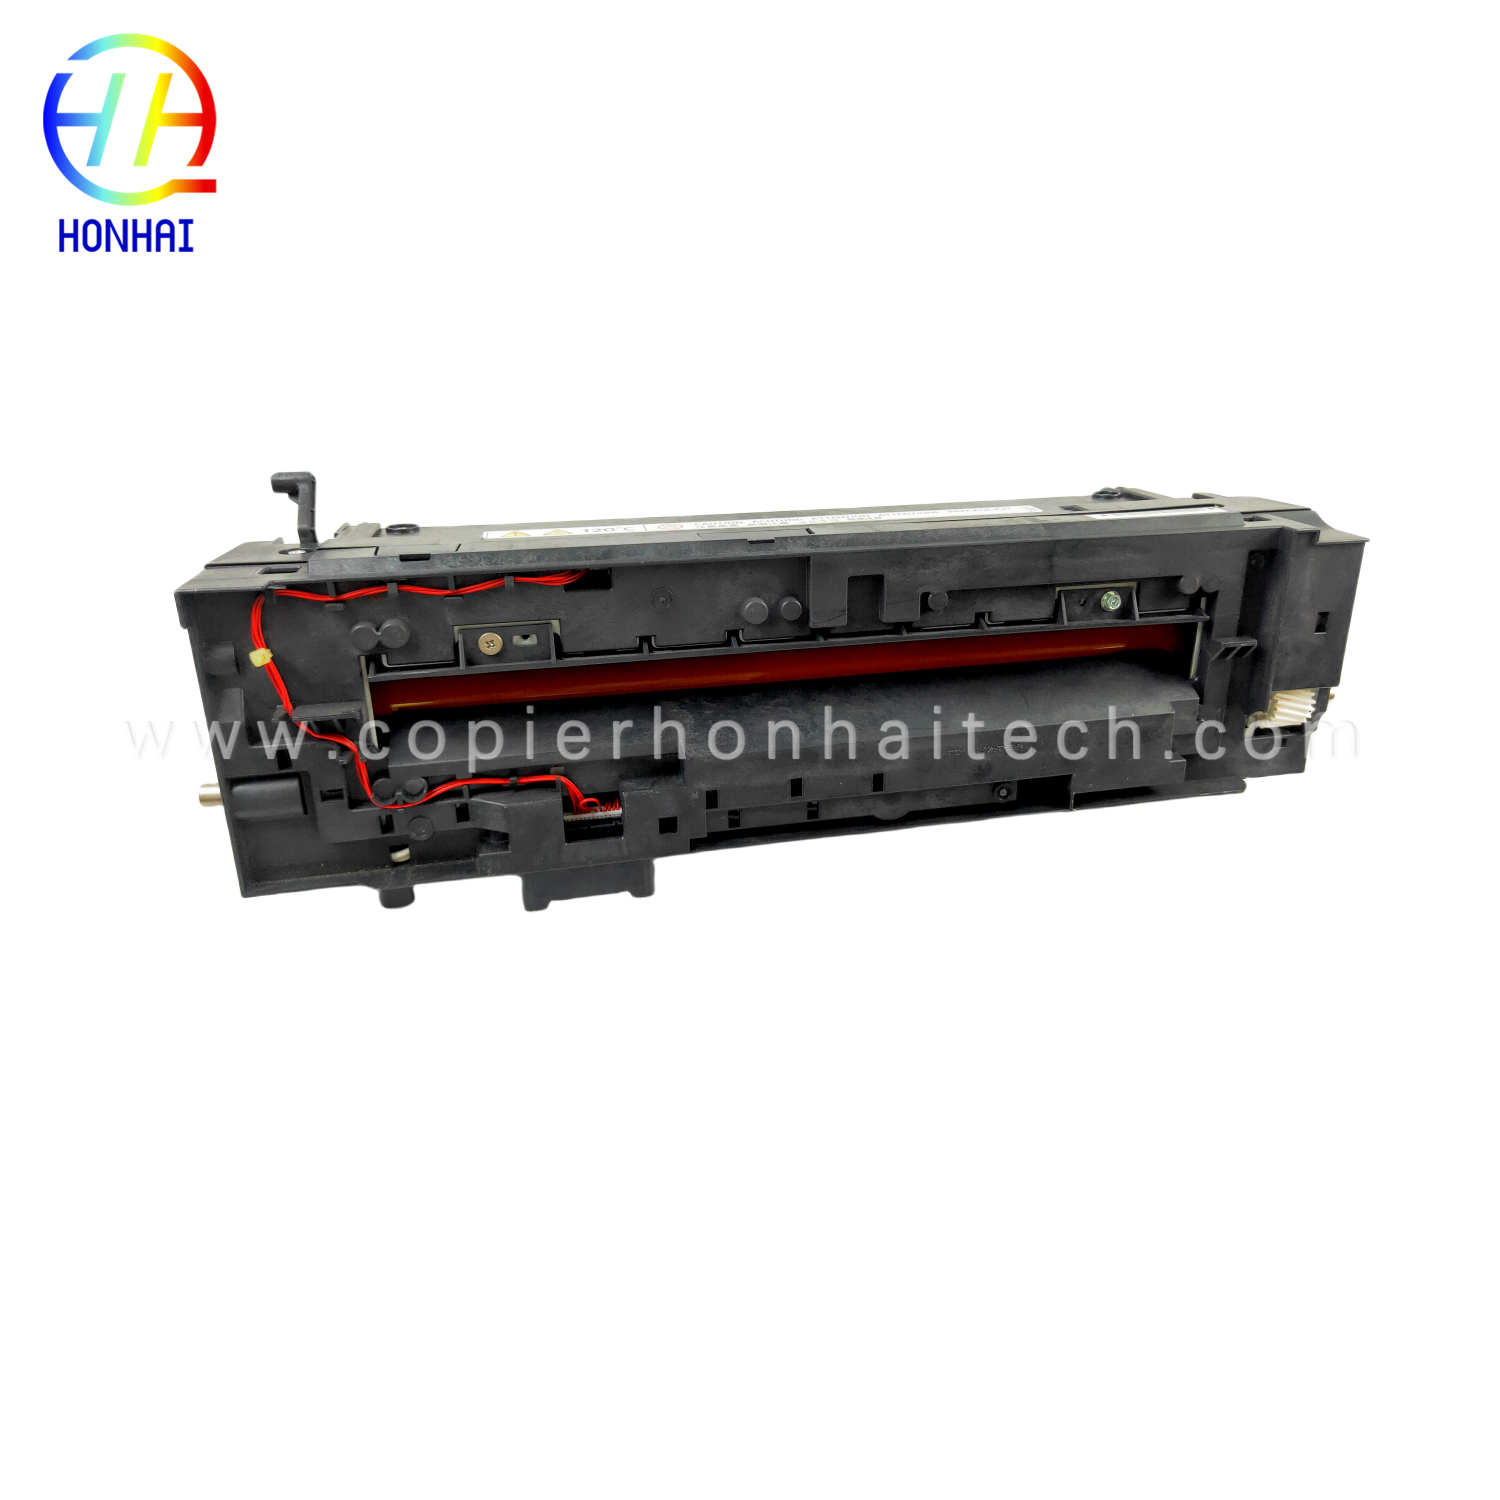 https://www.copierhonhaitech.com/fuser-unit-220v-for-ricoh-mp-c2051-c2551-d1064006-fuser-assembly-product/